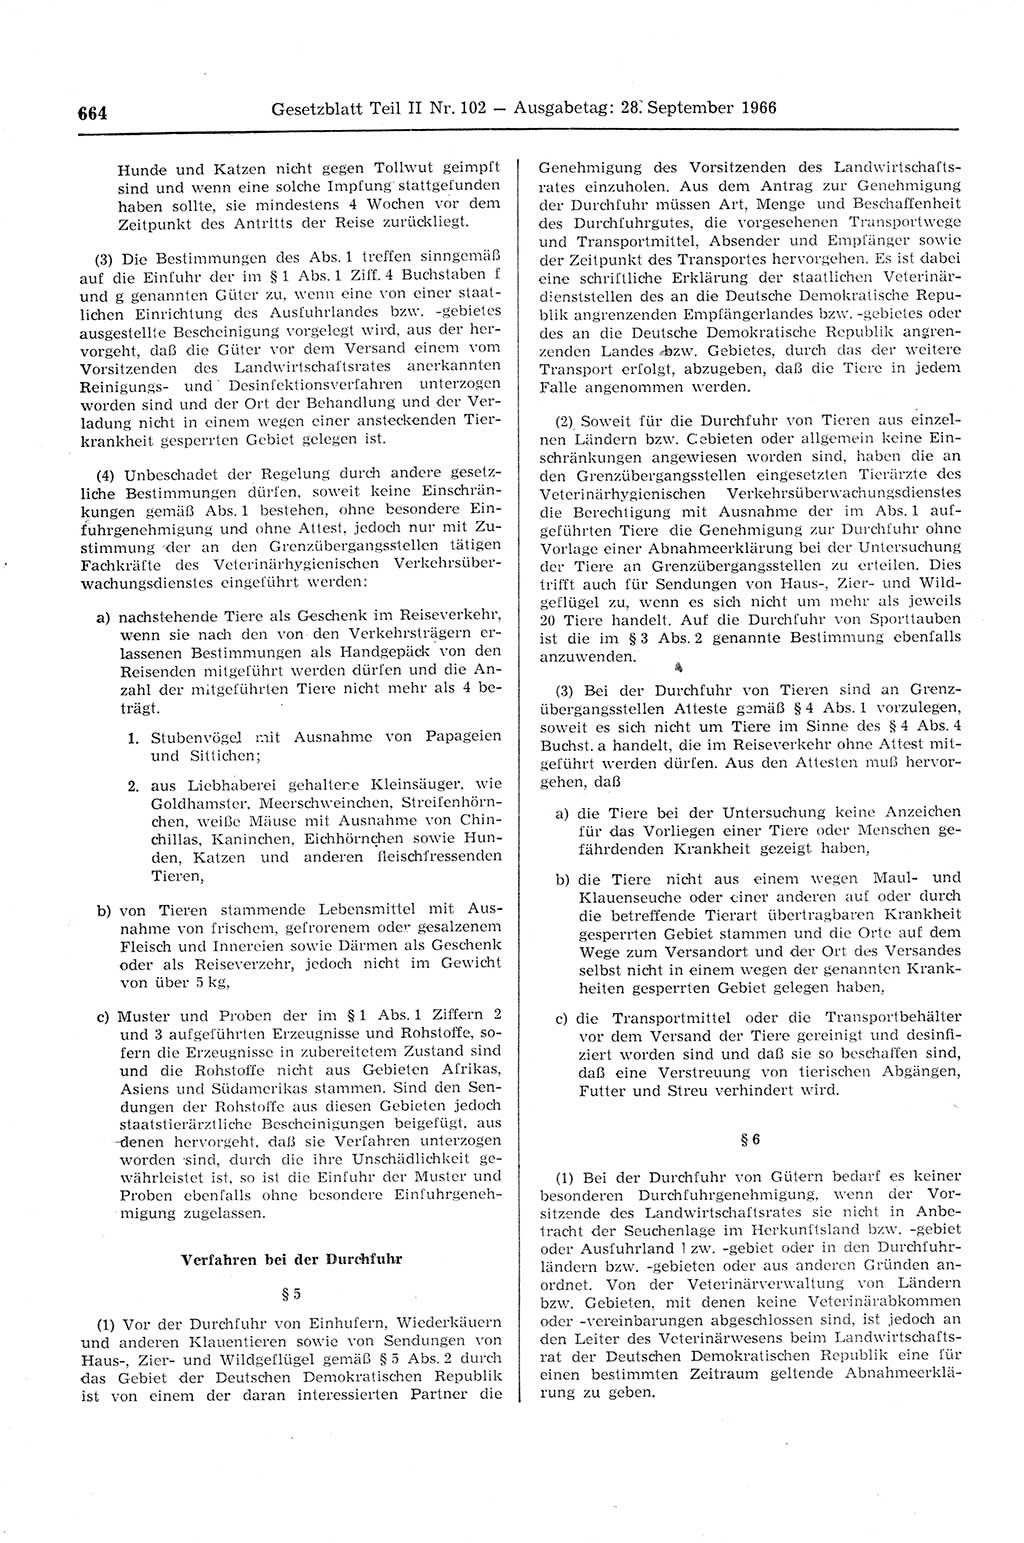 Gesetzblatt (GBl.) der Deutschen Demokratischen Republik (DDR) Teil ⅠⅠ 1966, Seite 664 (GBl. DDR ⅠⅠ 1966, S. 664)